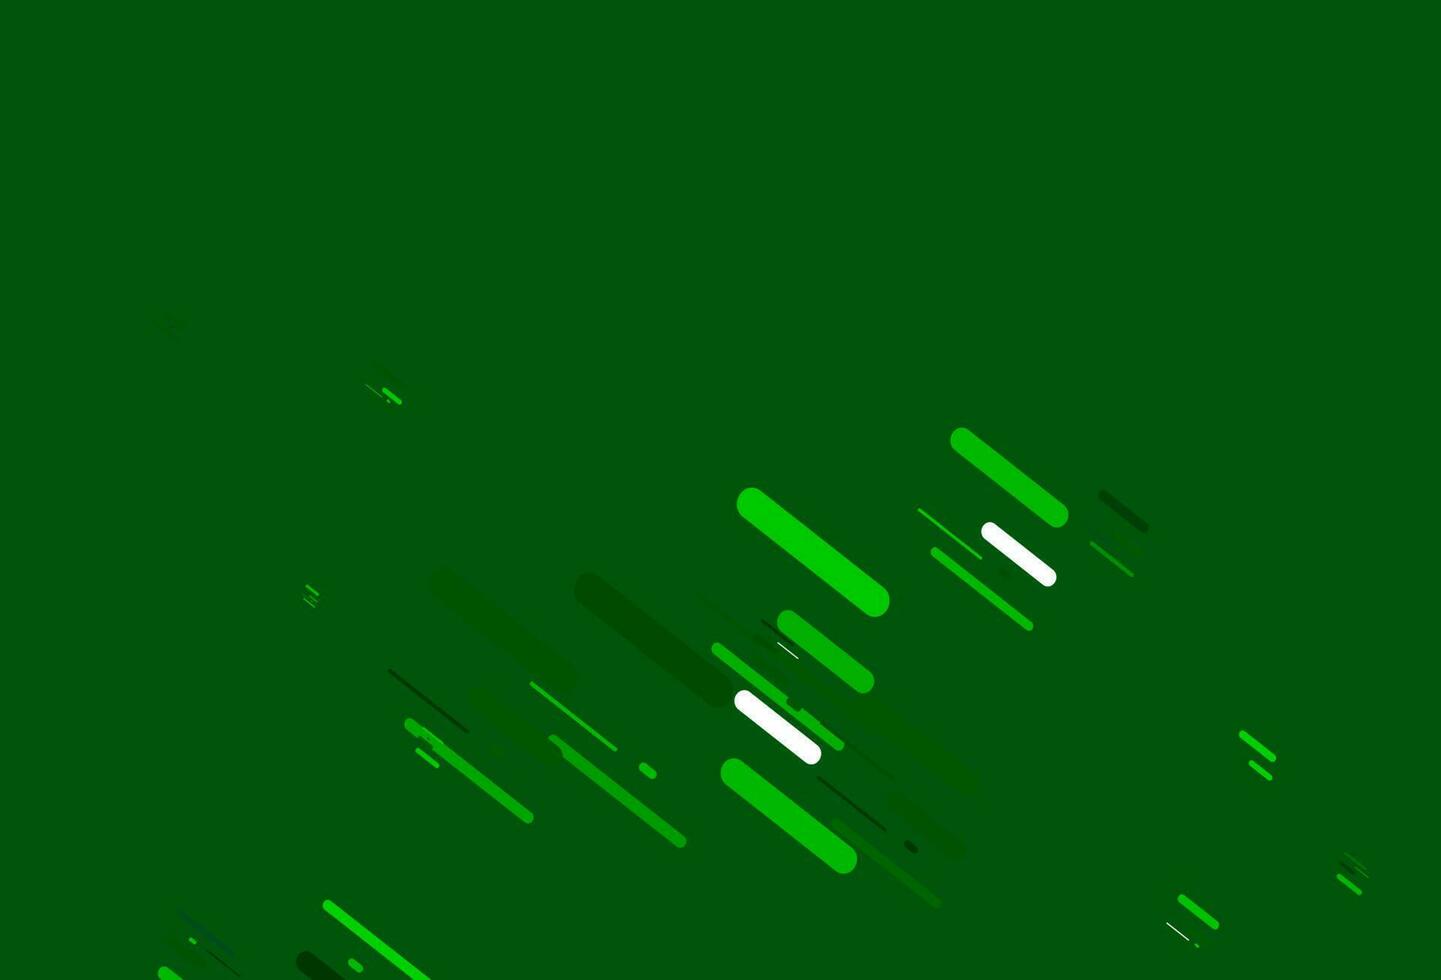 textura de vetor verde claro com linhas coloridas.